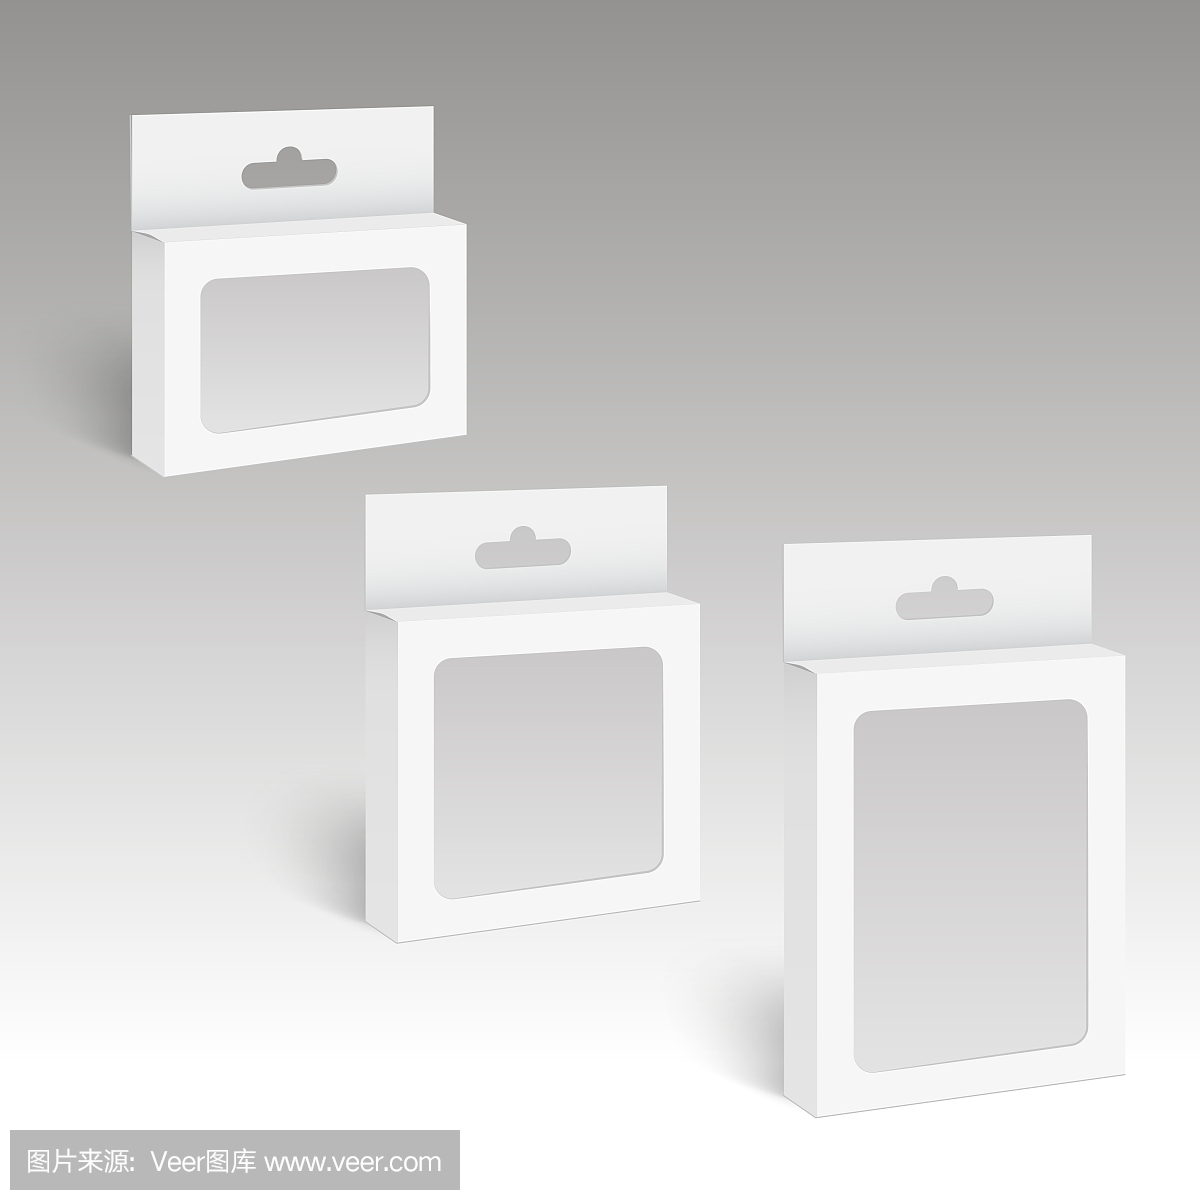 白色产品包装盒,带挂槽和塑料窗。模拟。向量